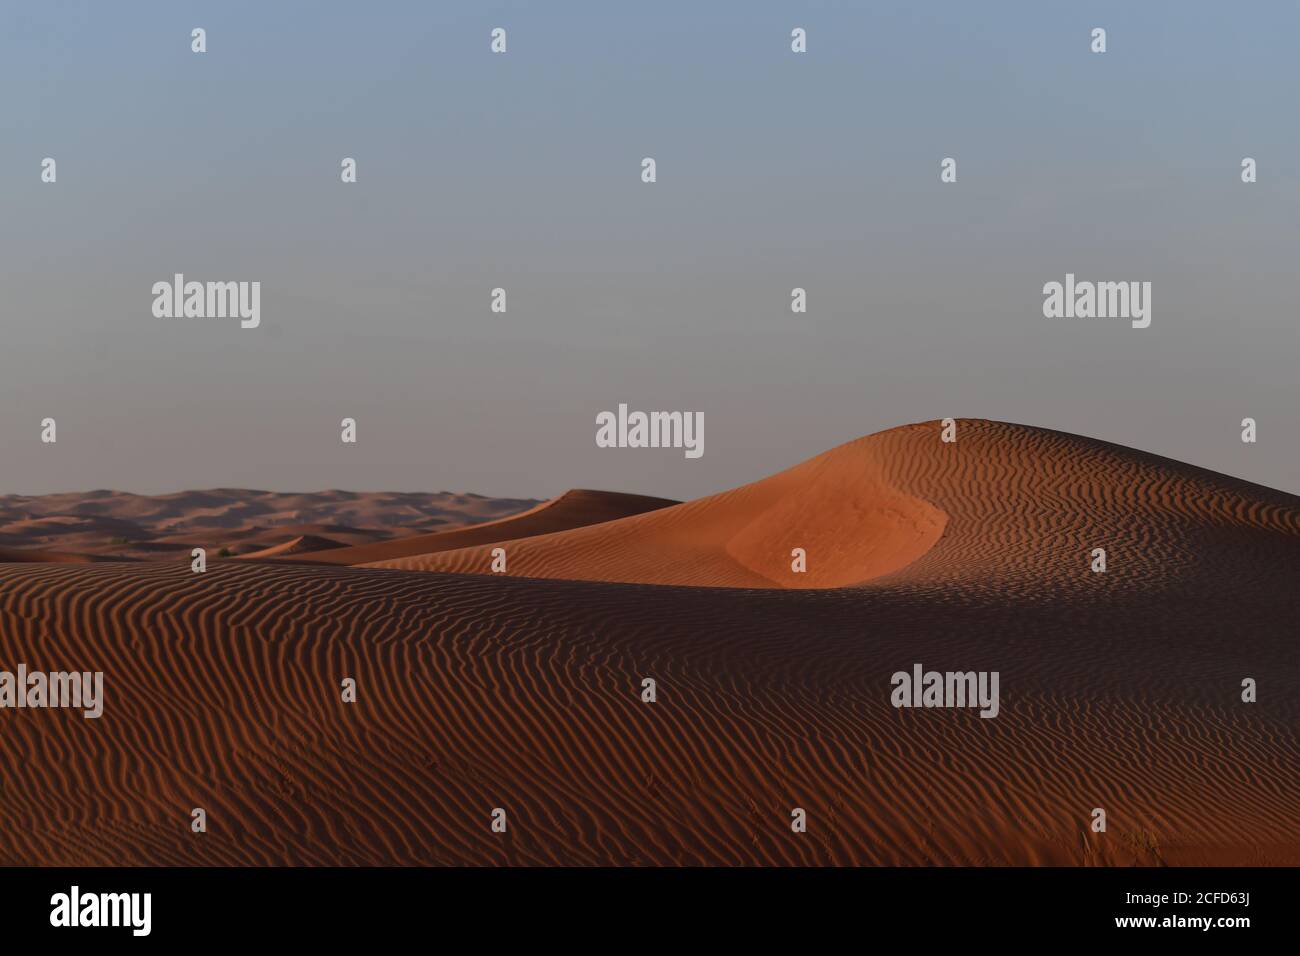 Le dune di sabbia del deserto della Penisola Araba sono contornate in forme e dimensioni diverse dai mutevoli venti dei paesaggi desertici. Foto Stock